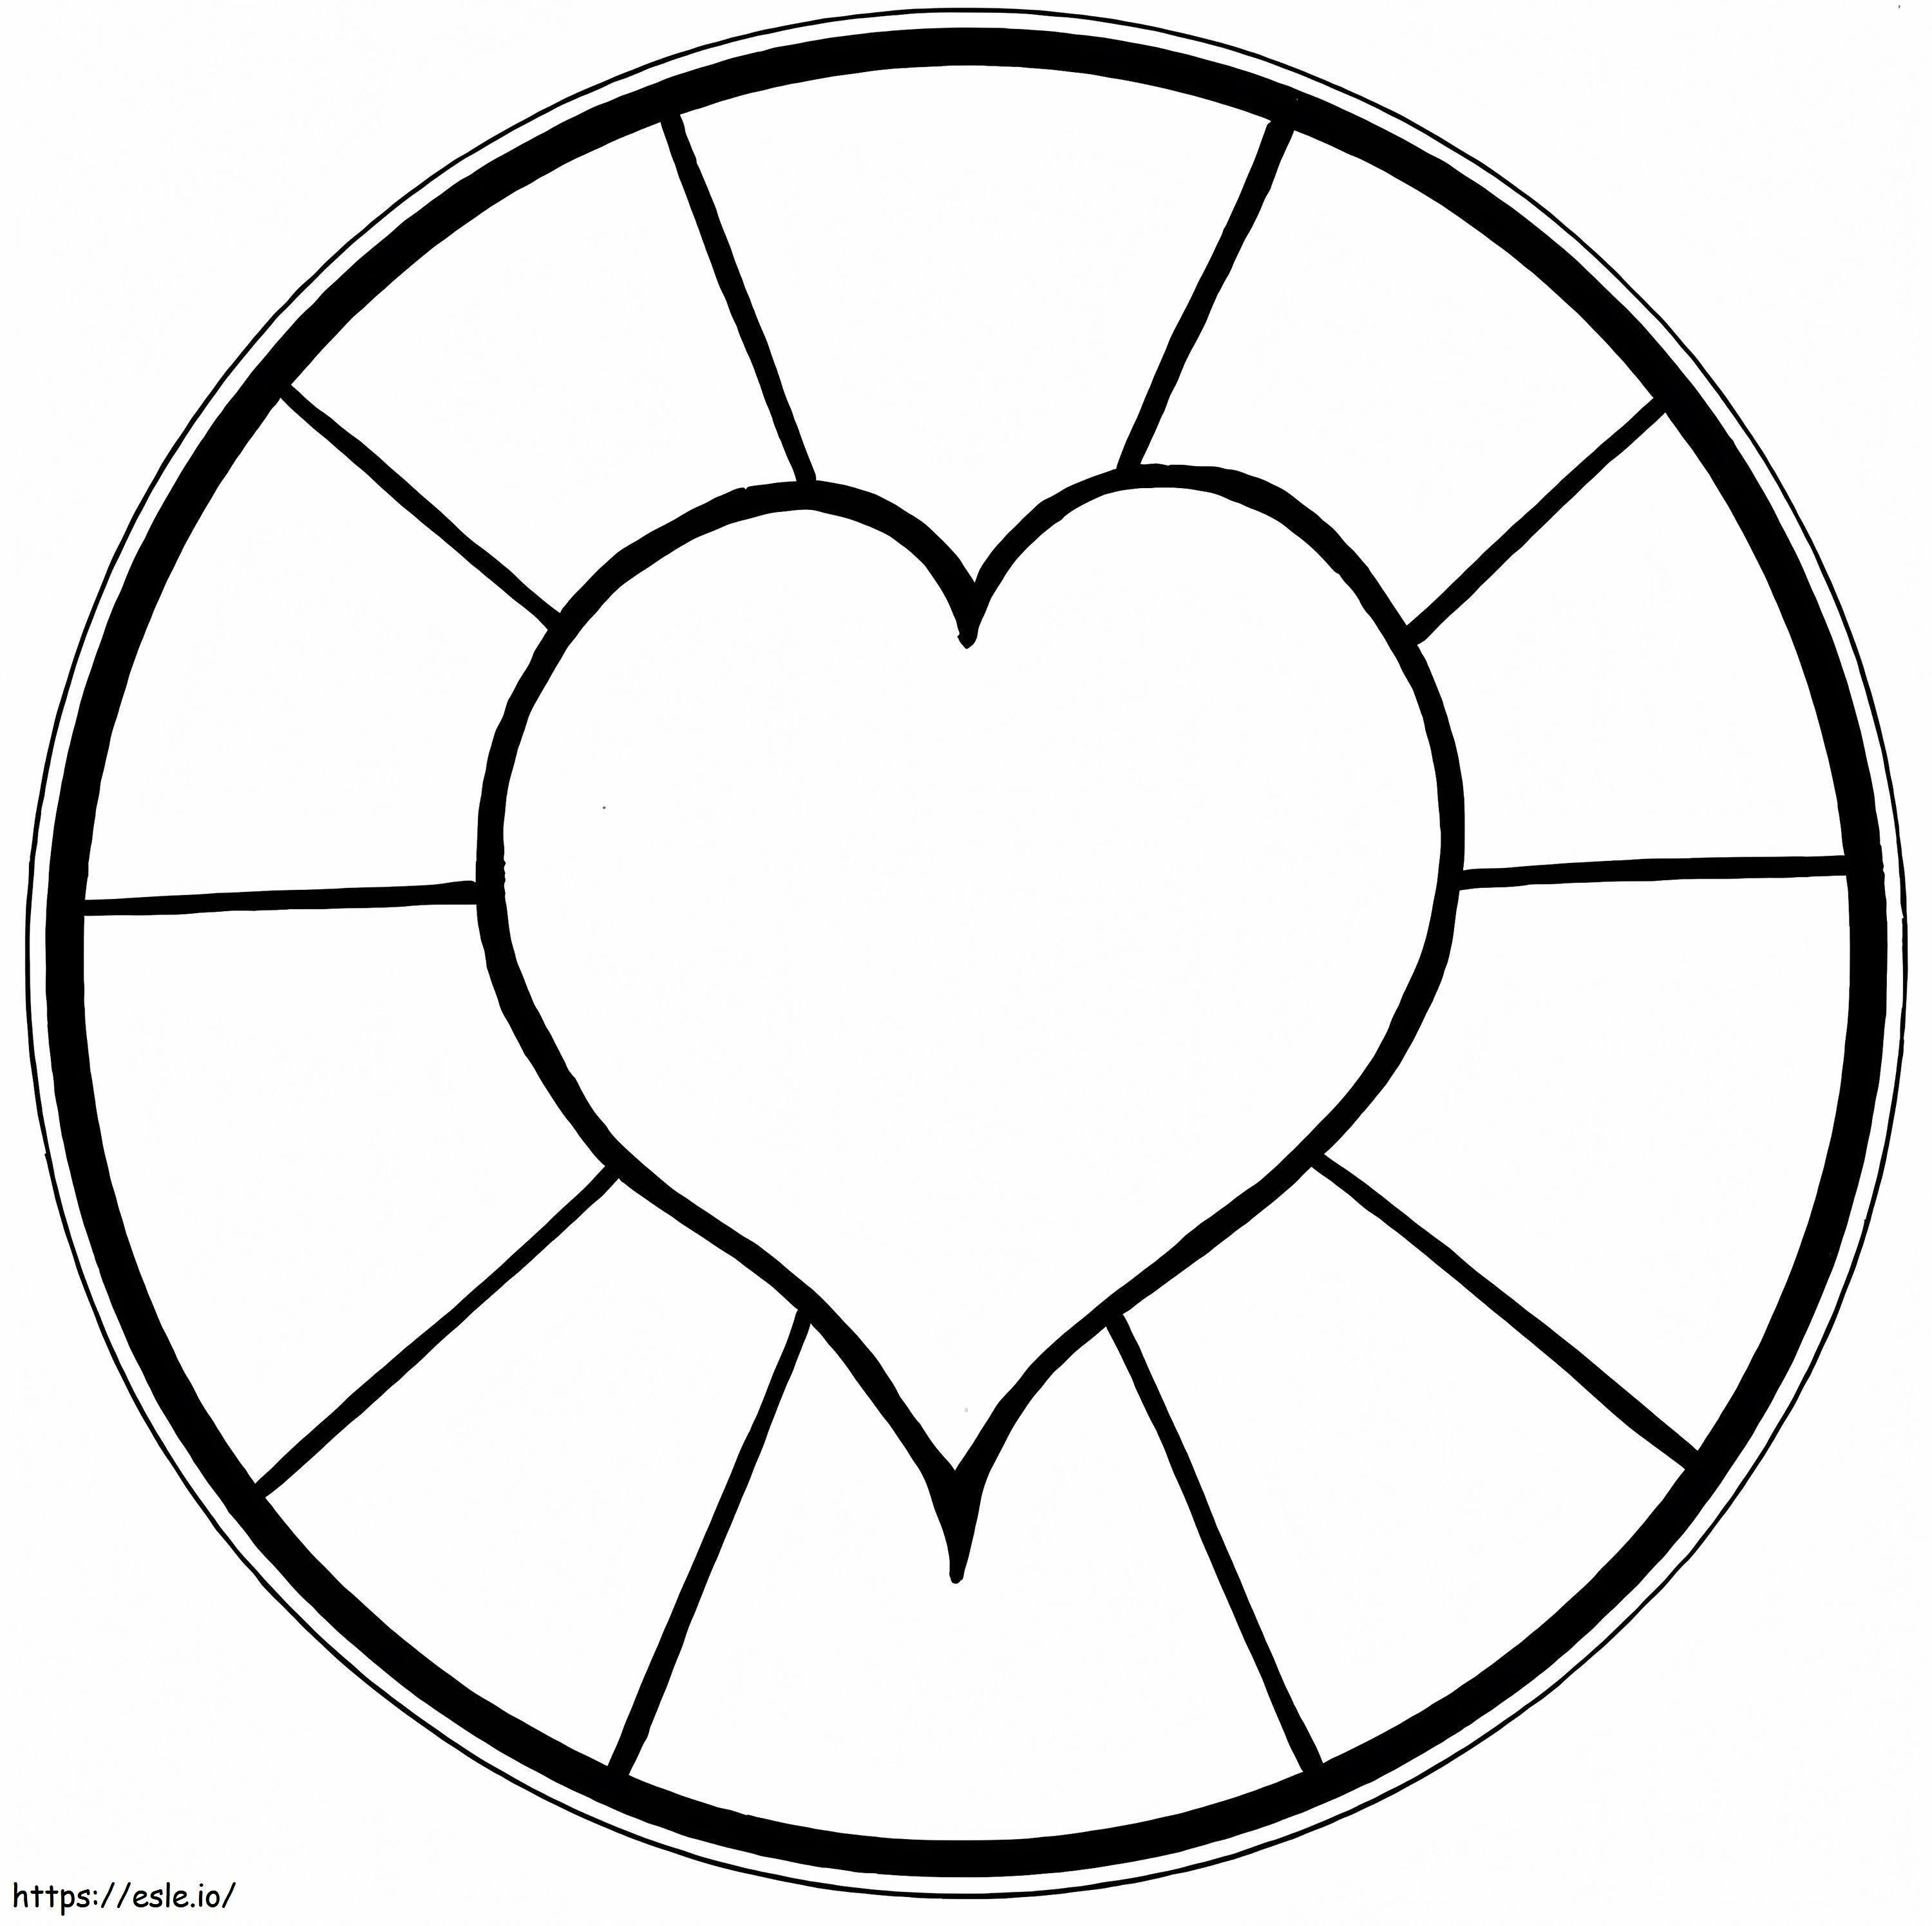 Coloriage Mandala Coeur Normal En Cercle à imprimer dessin